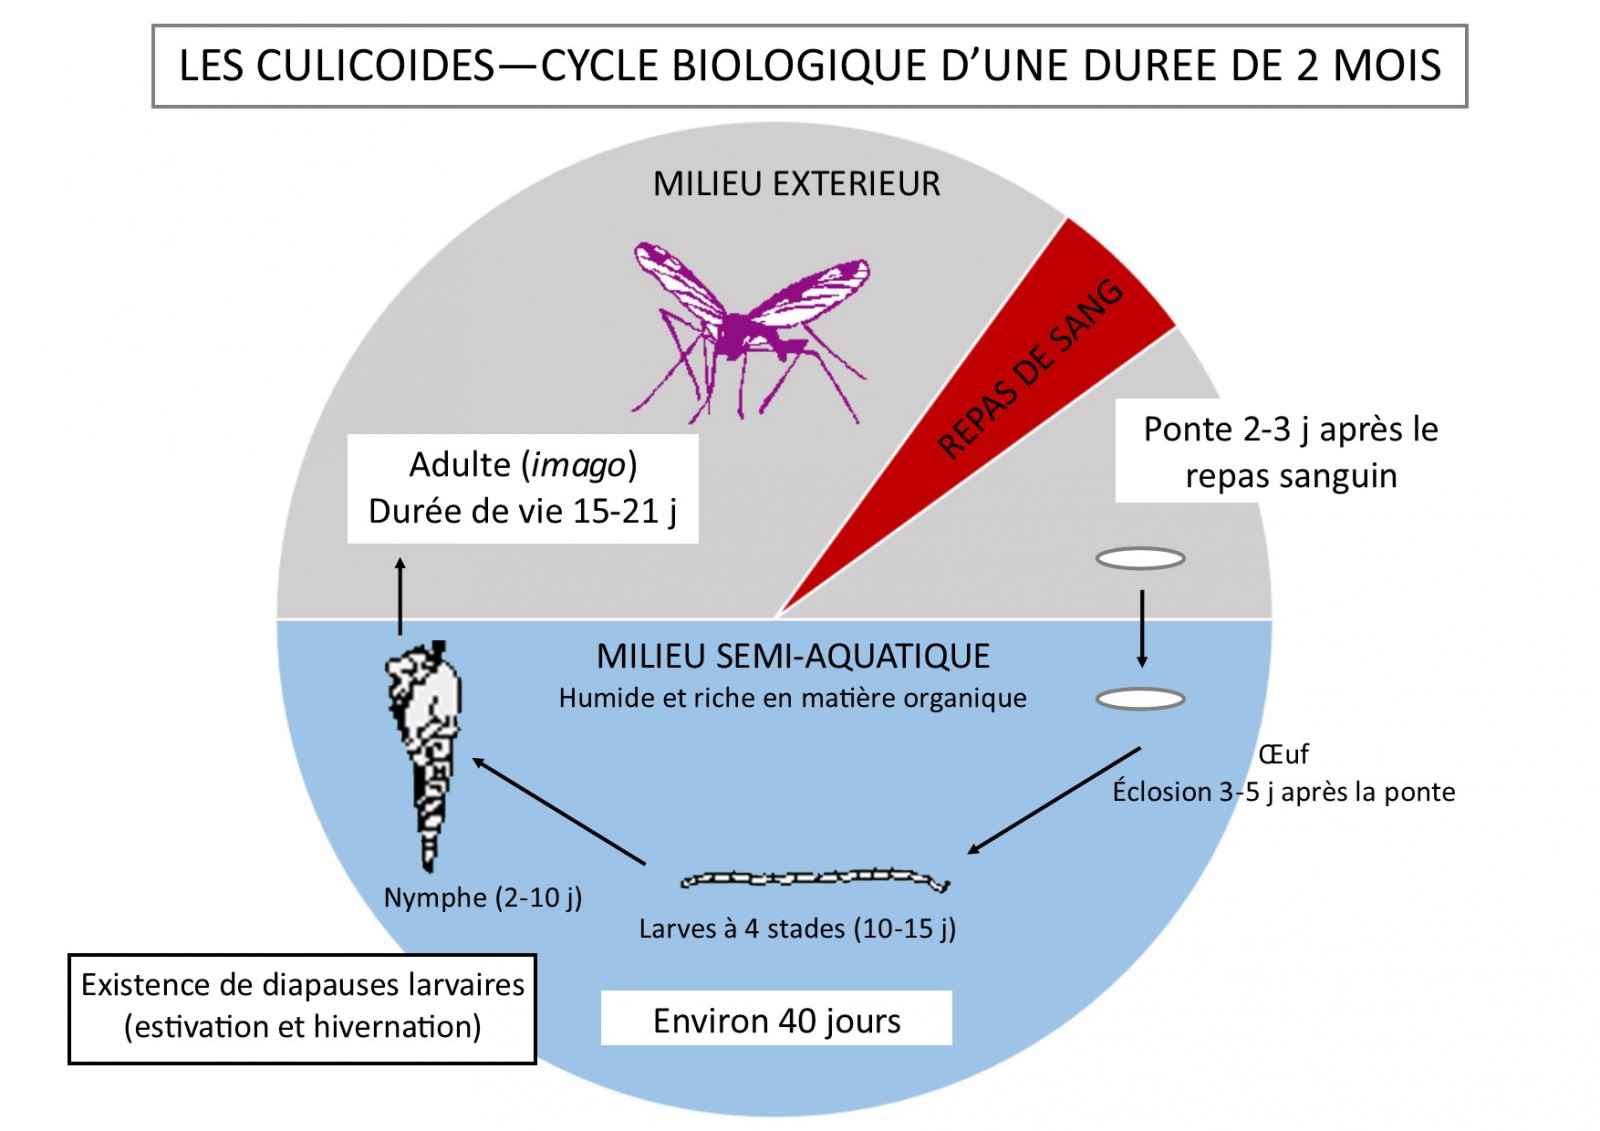 Cycle de développement du Culicoïde